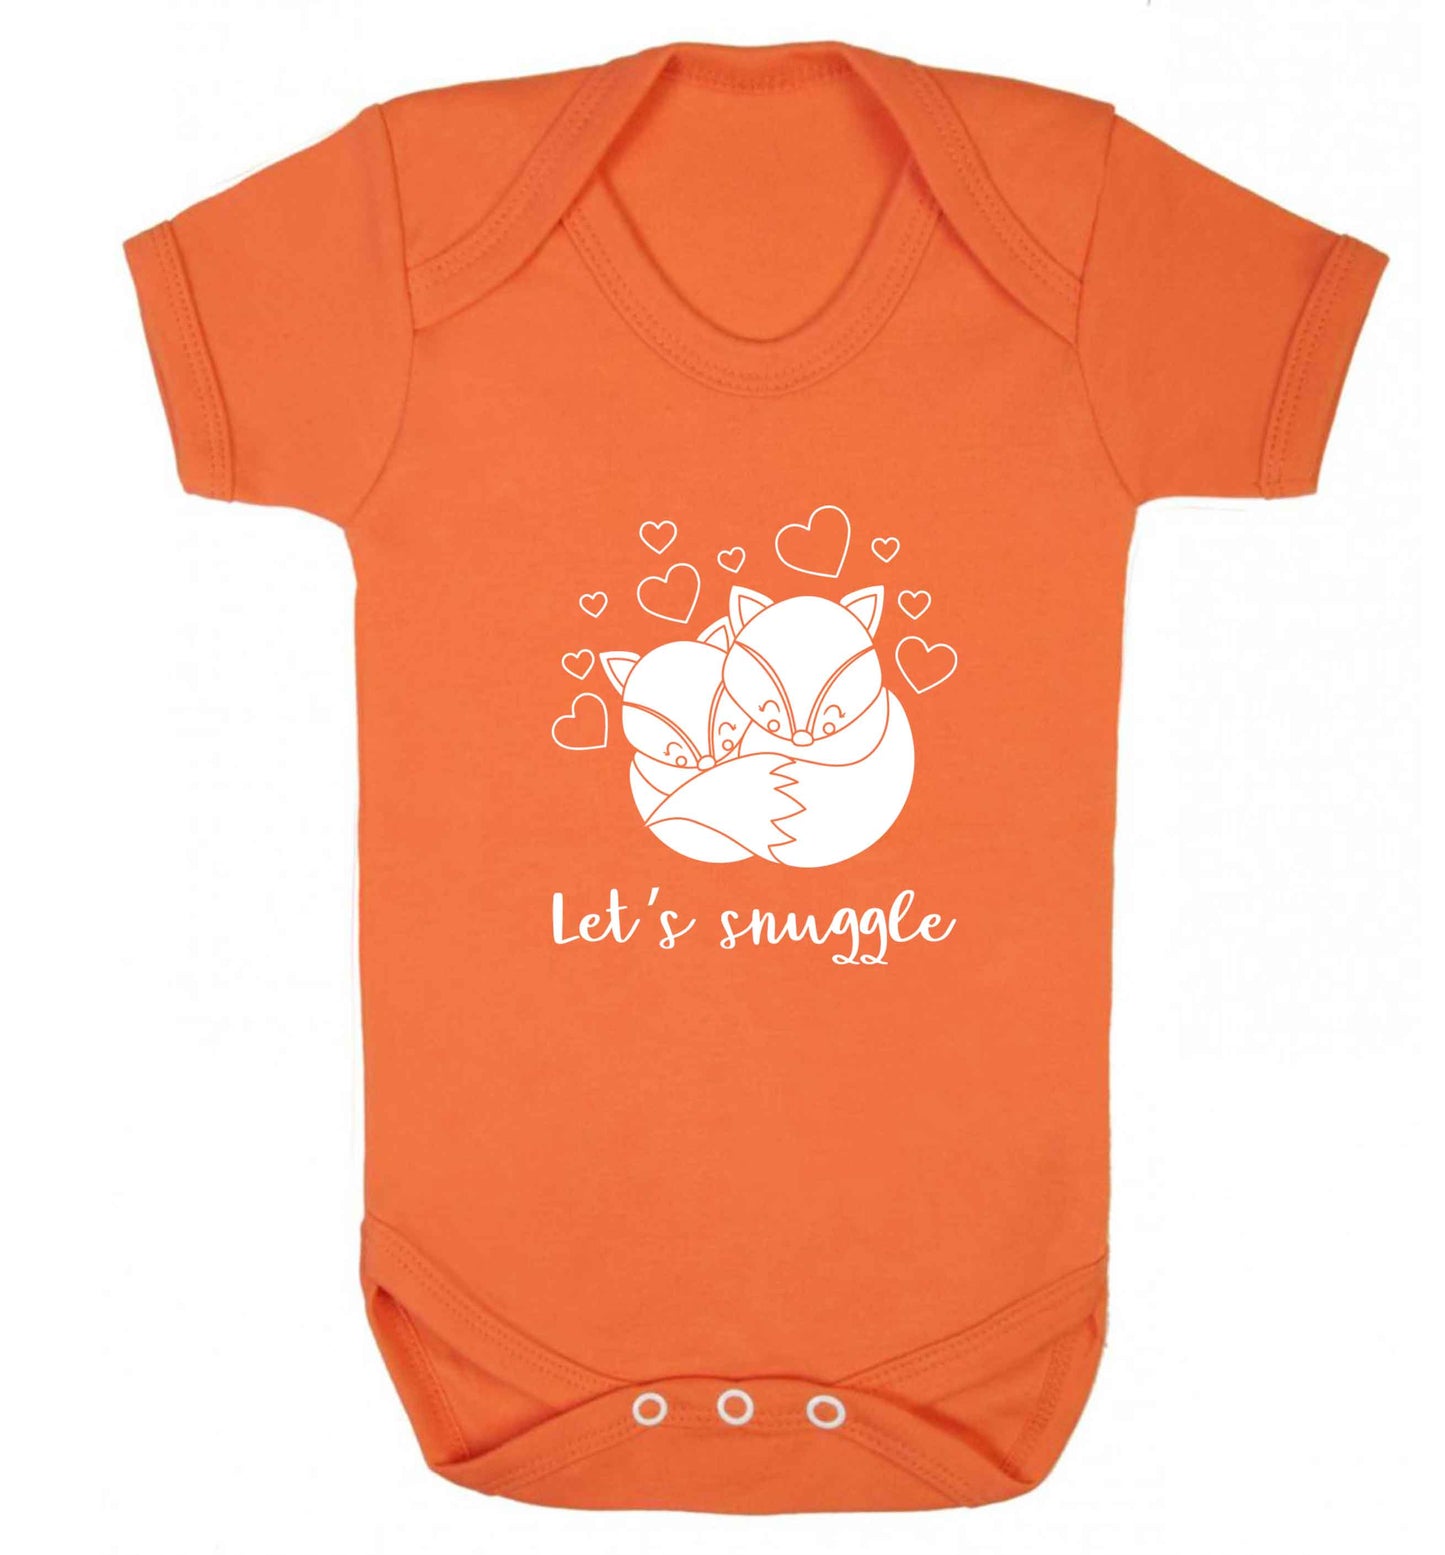 Let's snuggle baby vest orange 18-24 months